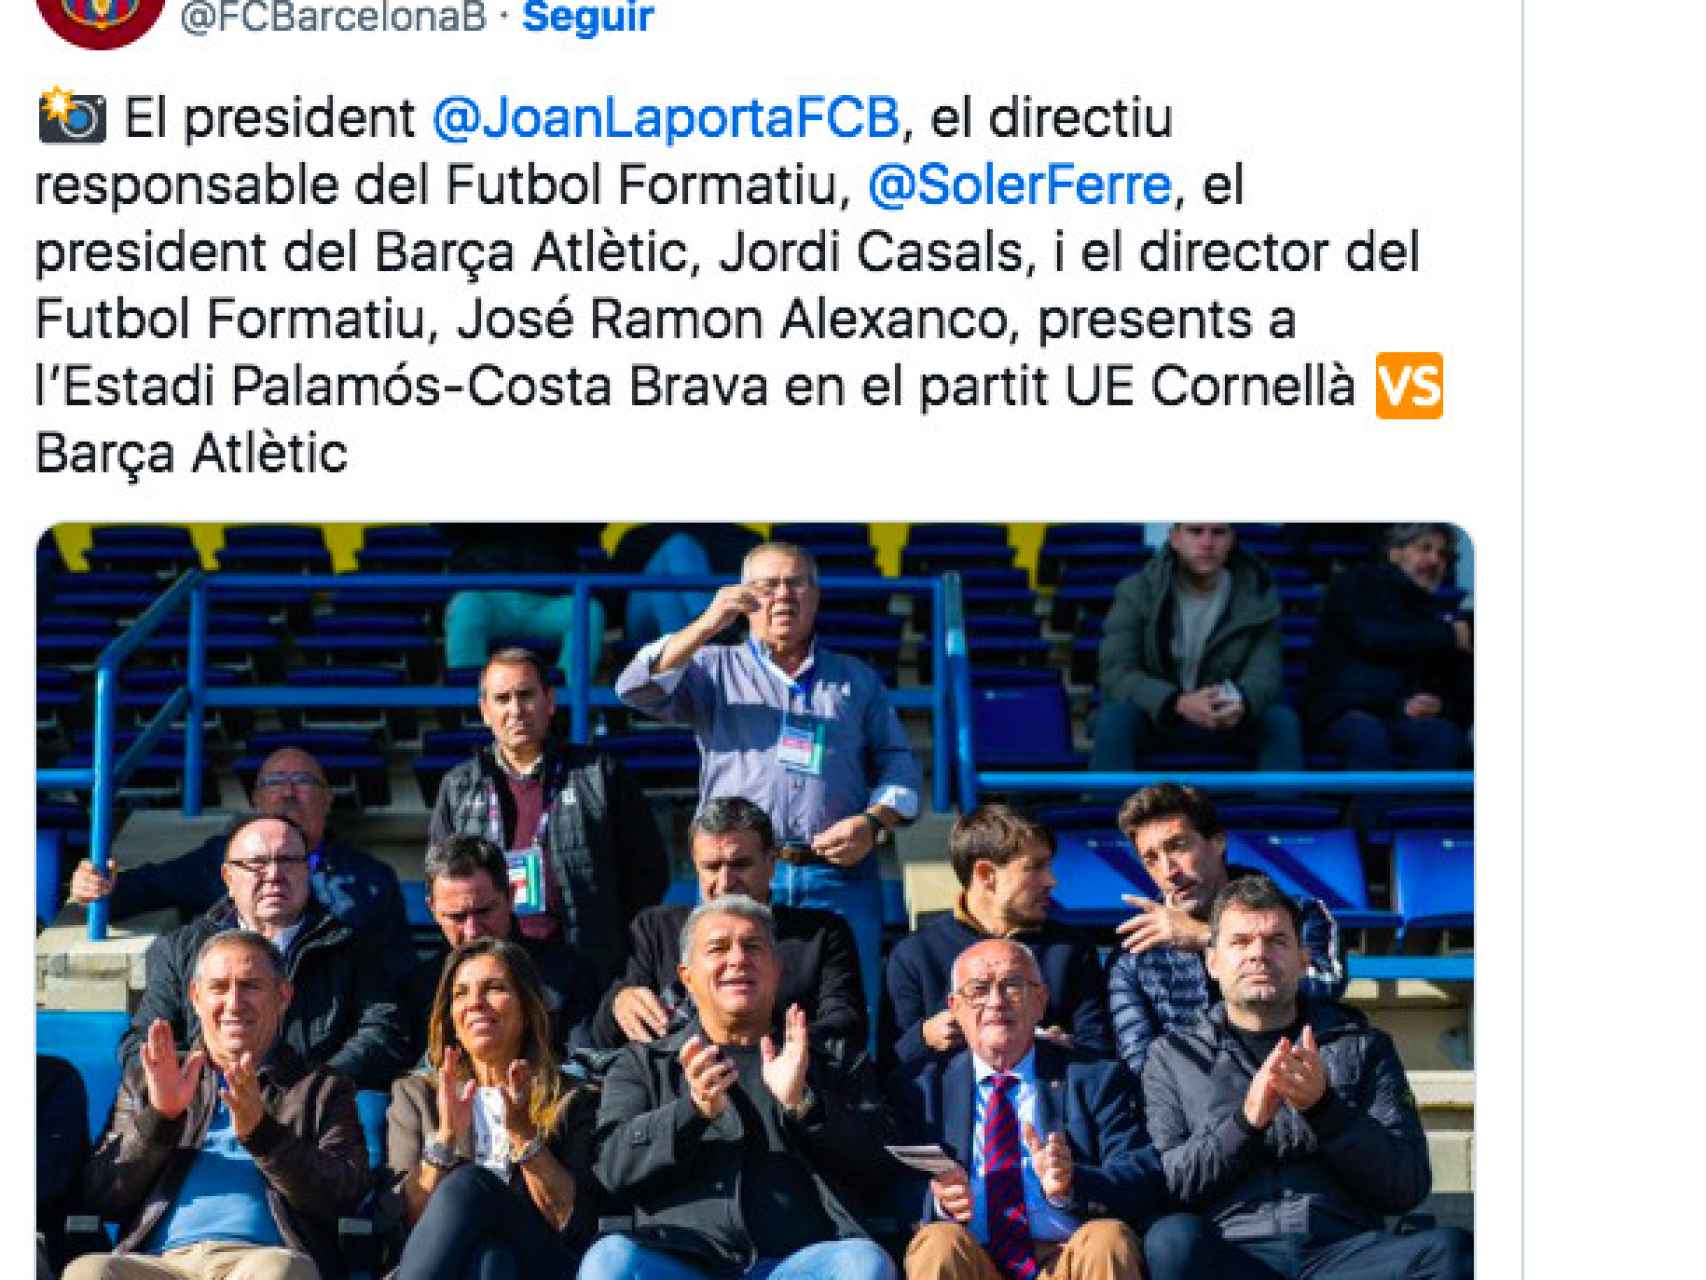 Laporta presenció el partido entre el Cornellà y el Barça B